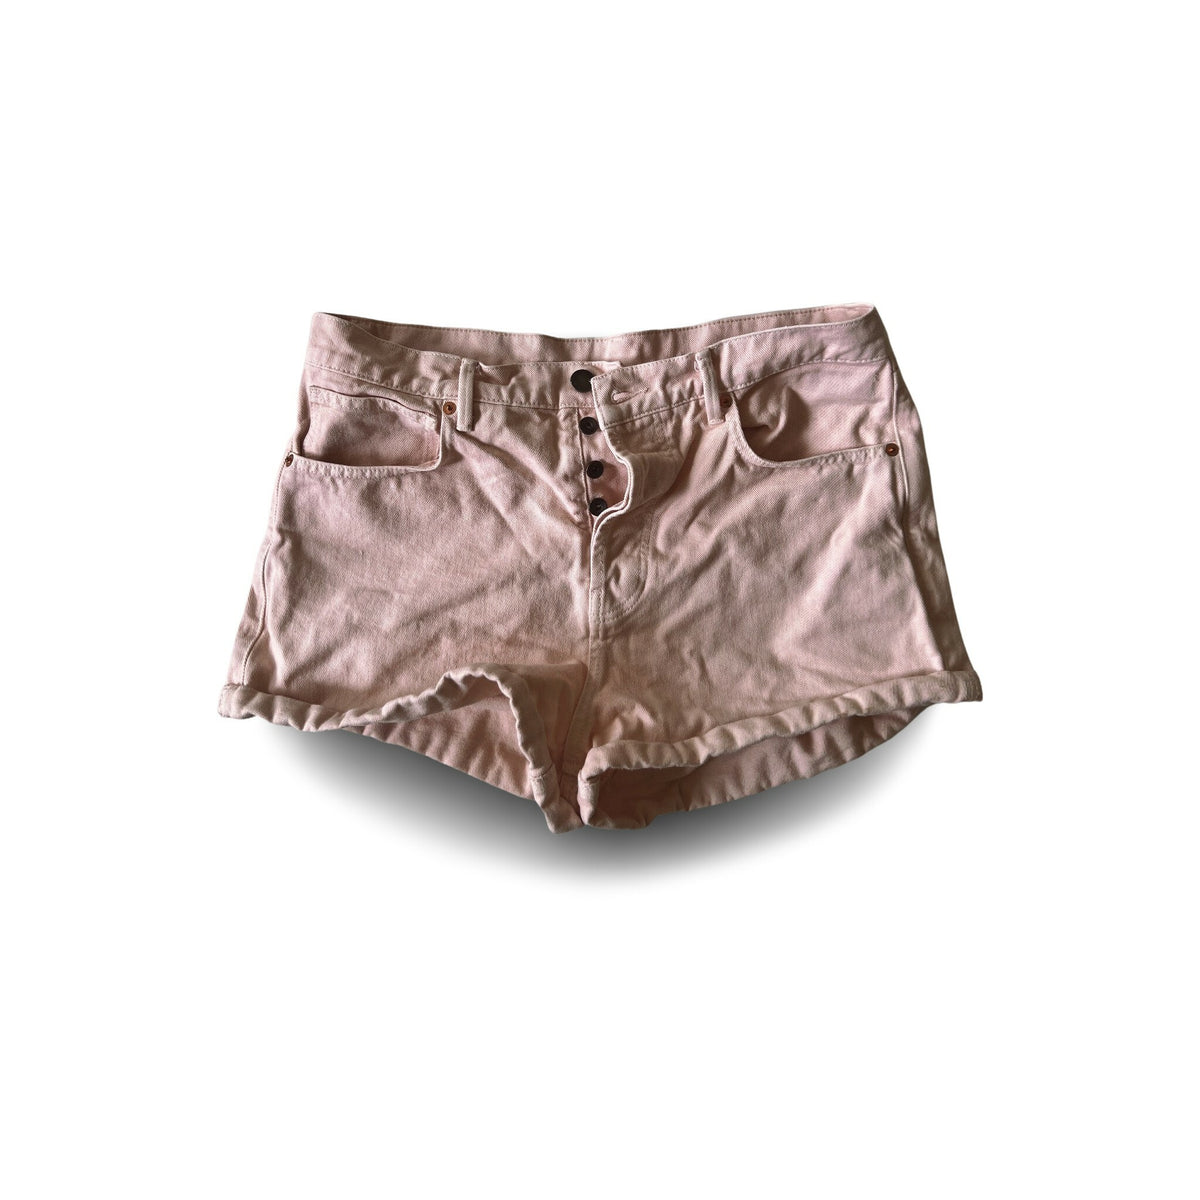 Scandi Minimal Raey Preloved Tahiti Denim Shorts in nude pink